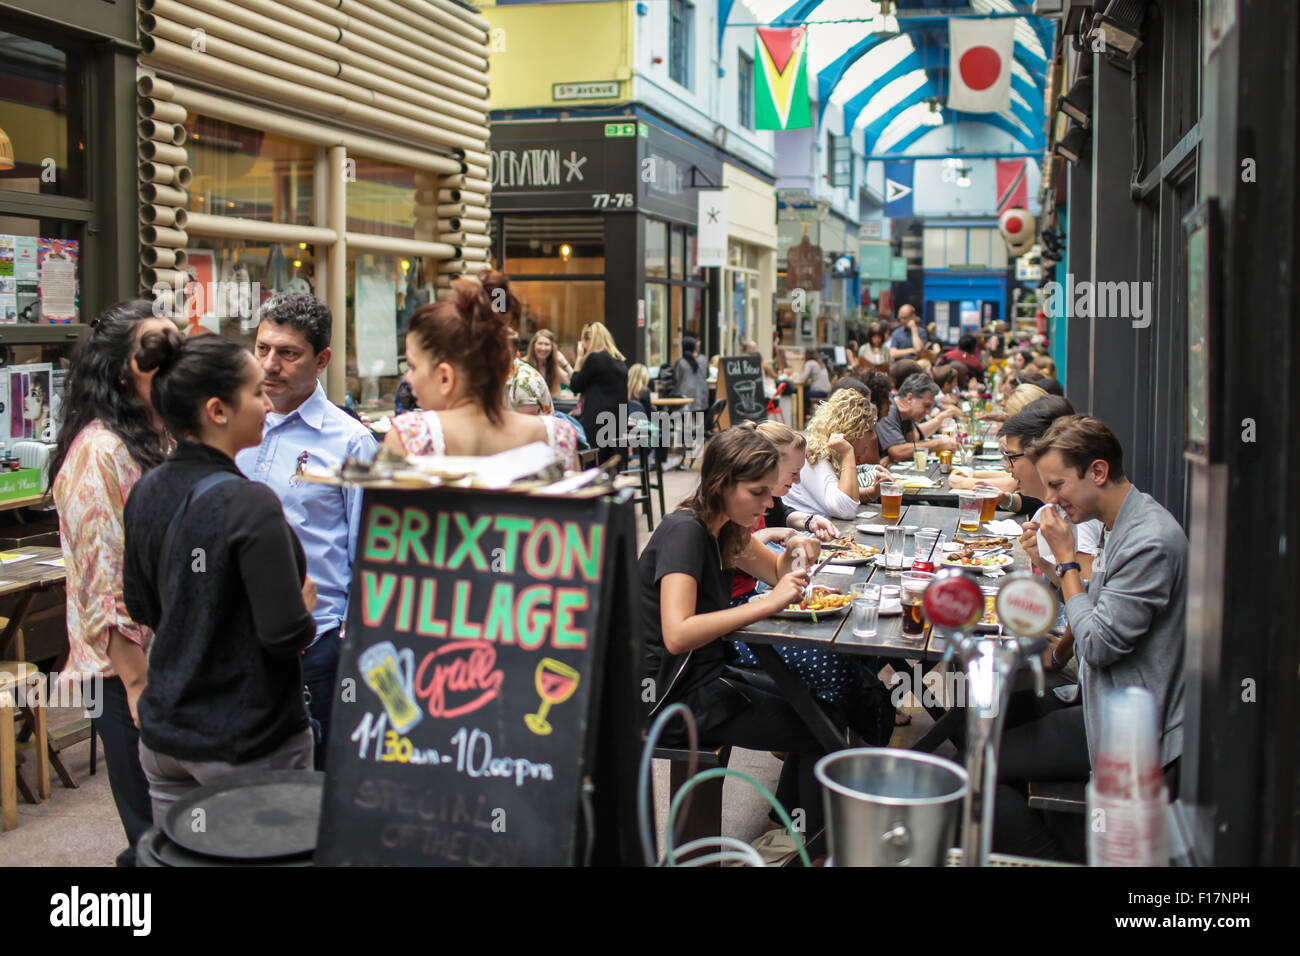 Brixton Village market, Londra, Regno Unito. Persone gustare del cibo e delle bevande nel villaggio di Brixton, Brixton iconici mercato coperto. Foto Stock